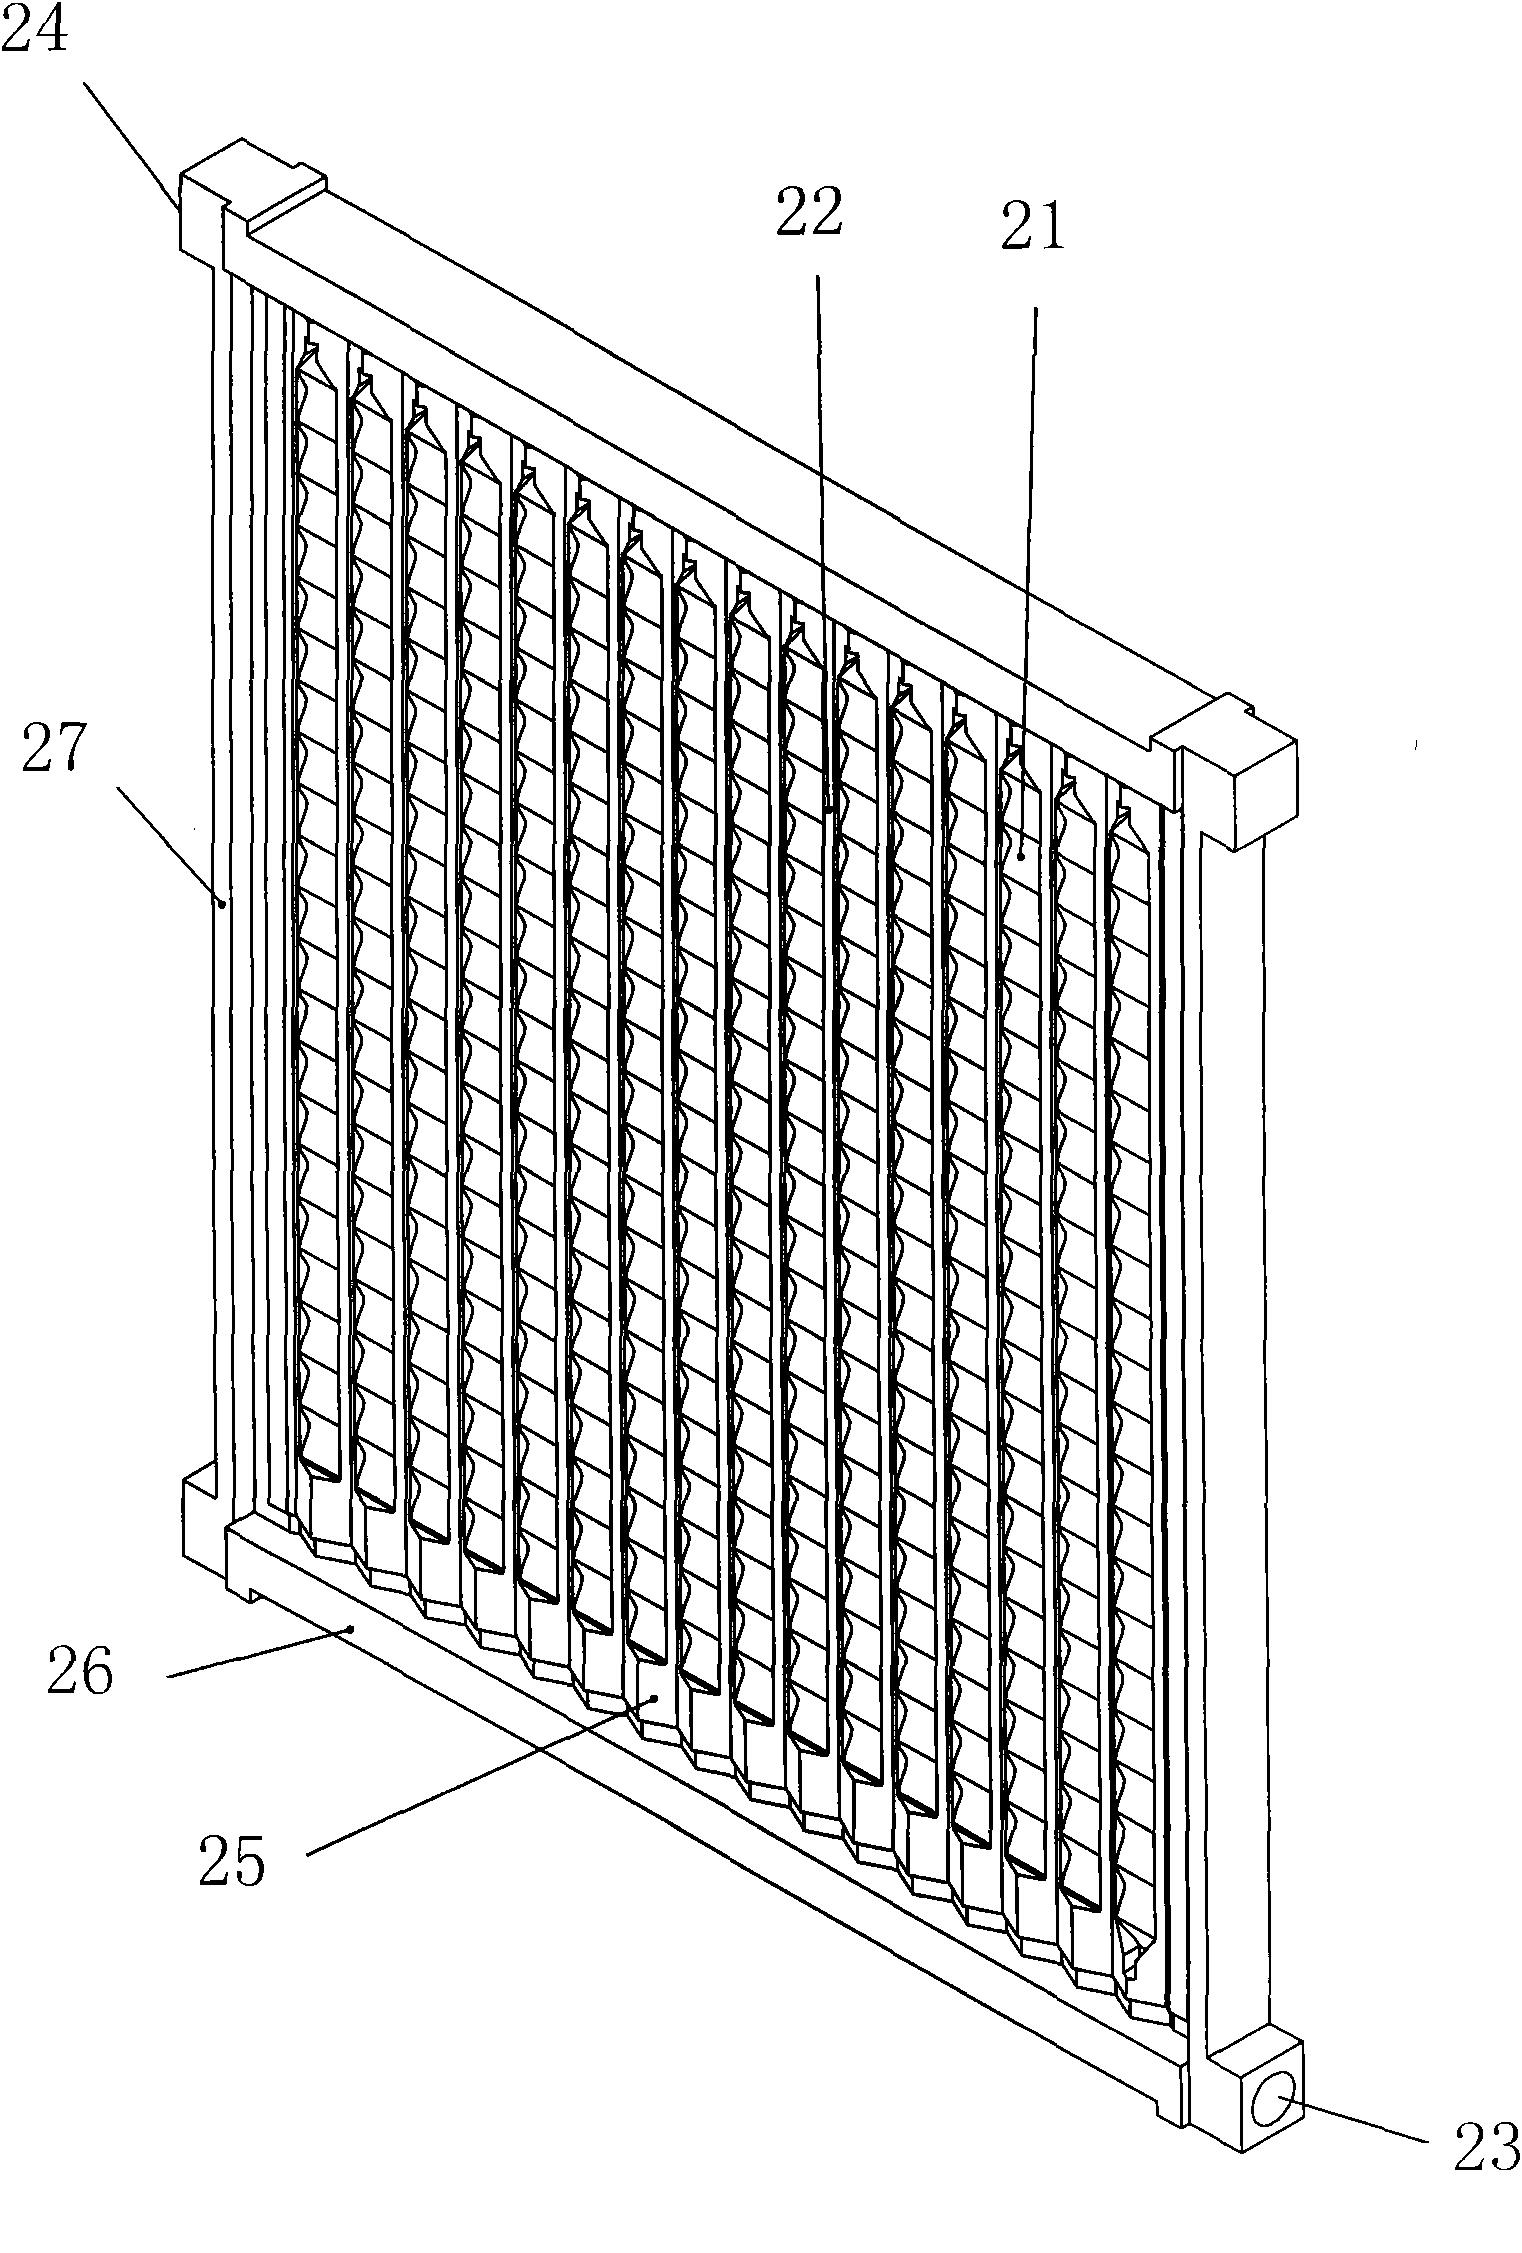 Plate cavity-type heat exchanger